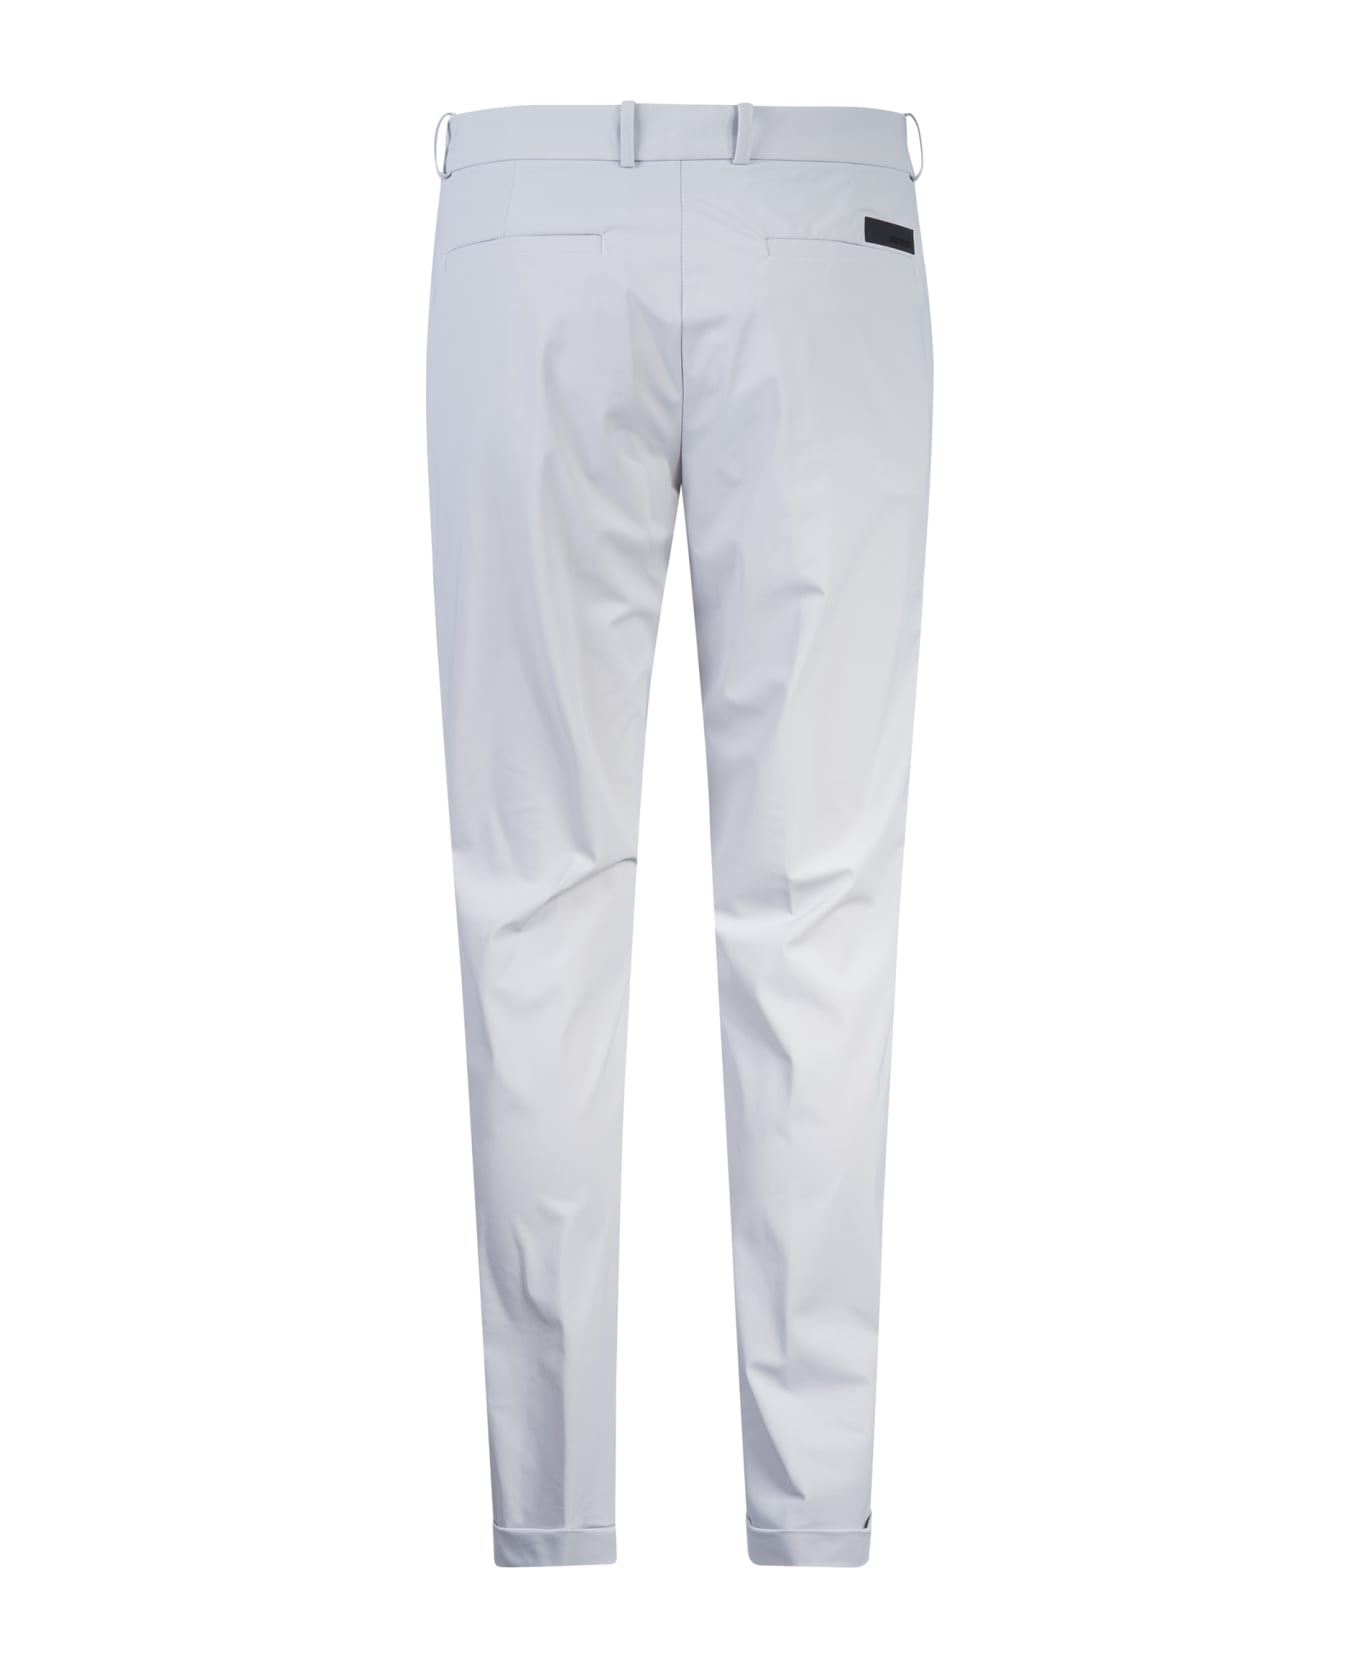 RRD - Roberto Ricci Design Revo Chino Trousers - Grey